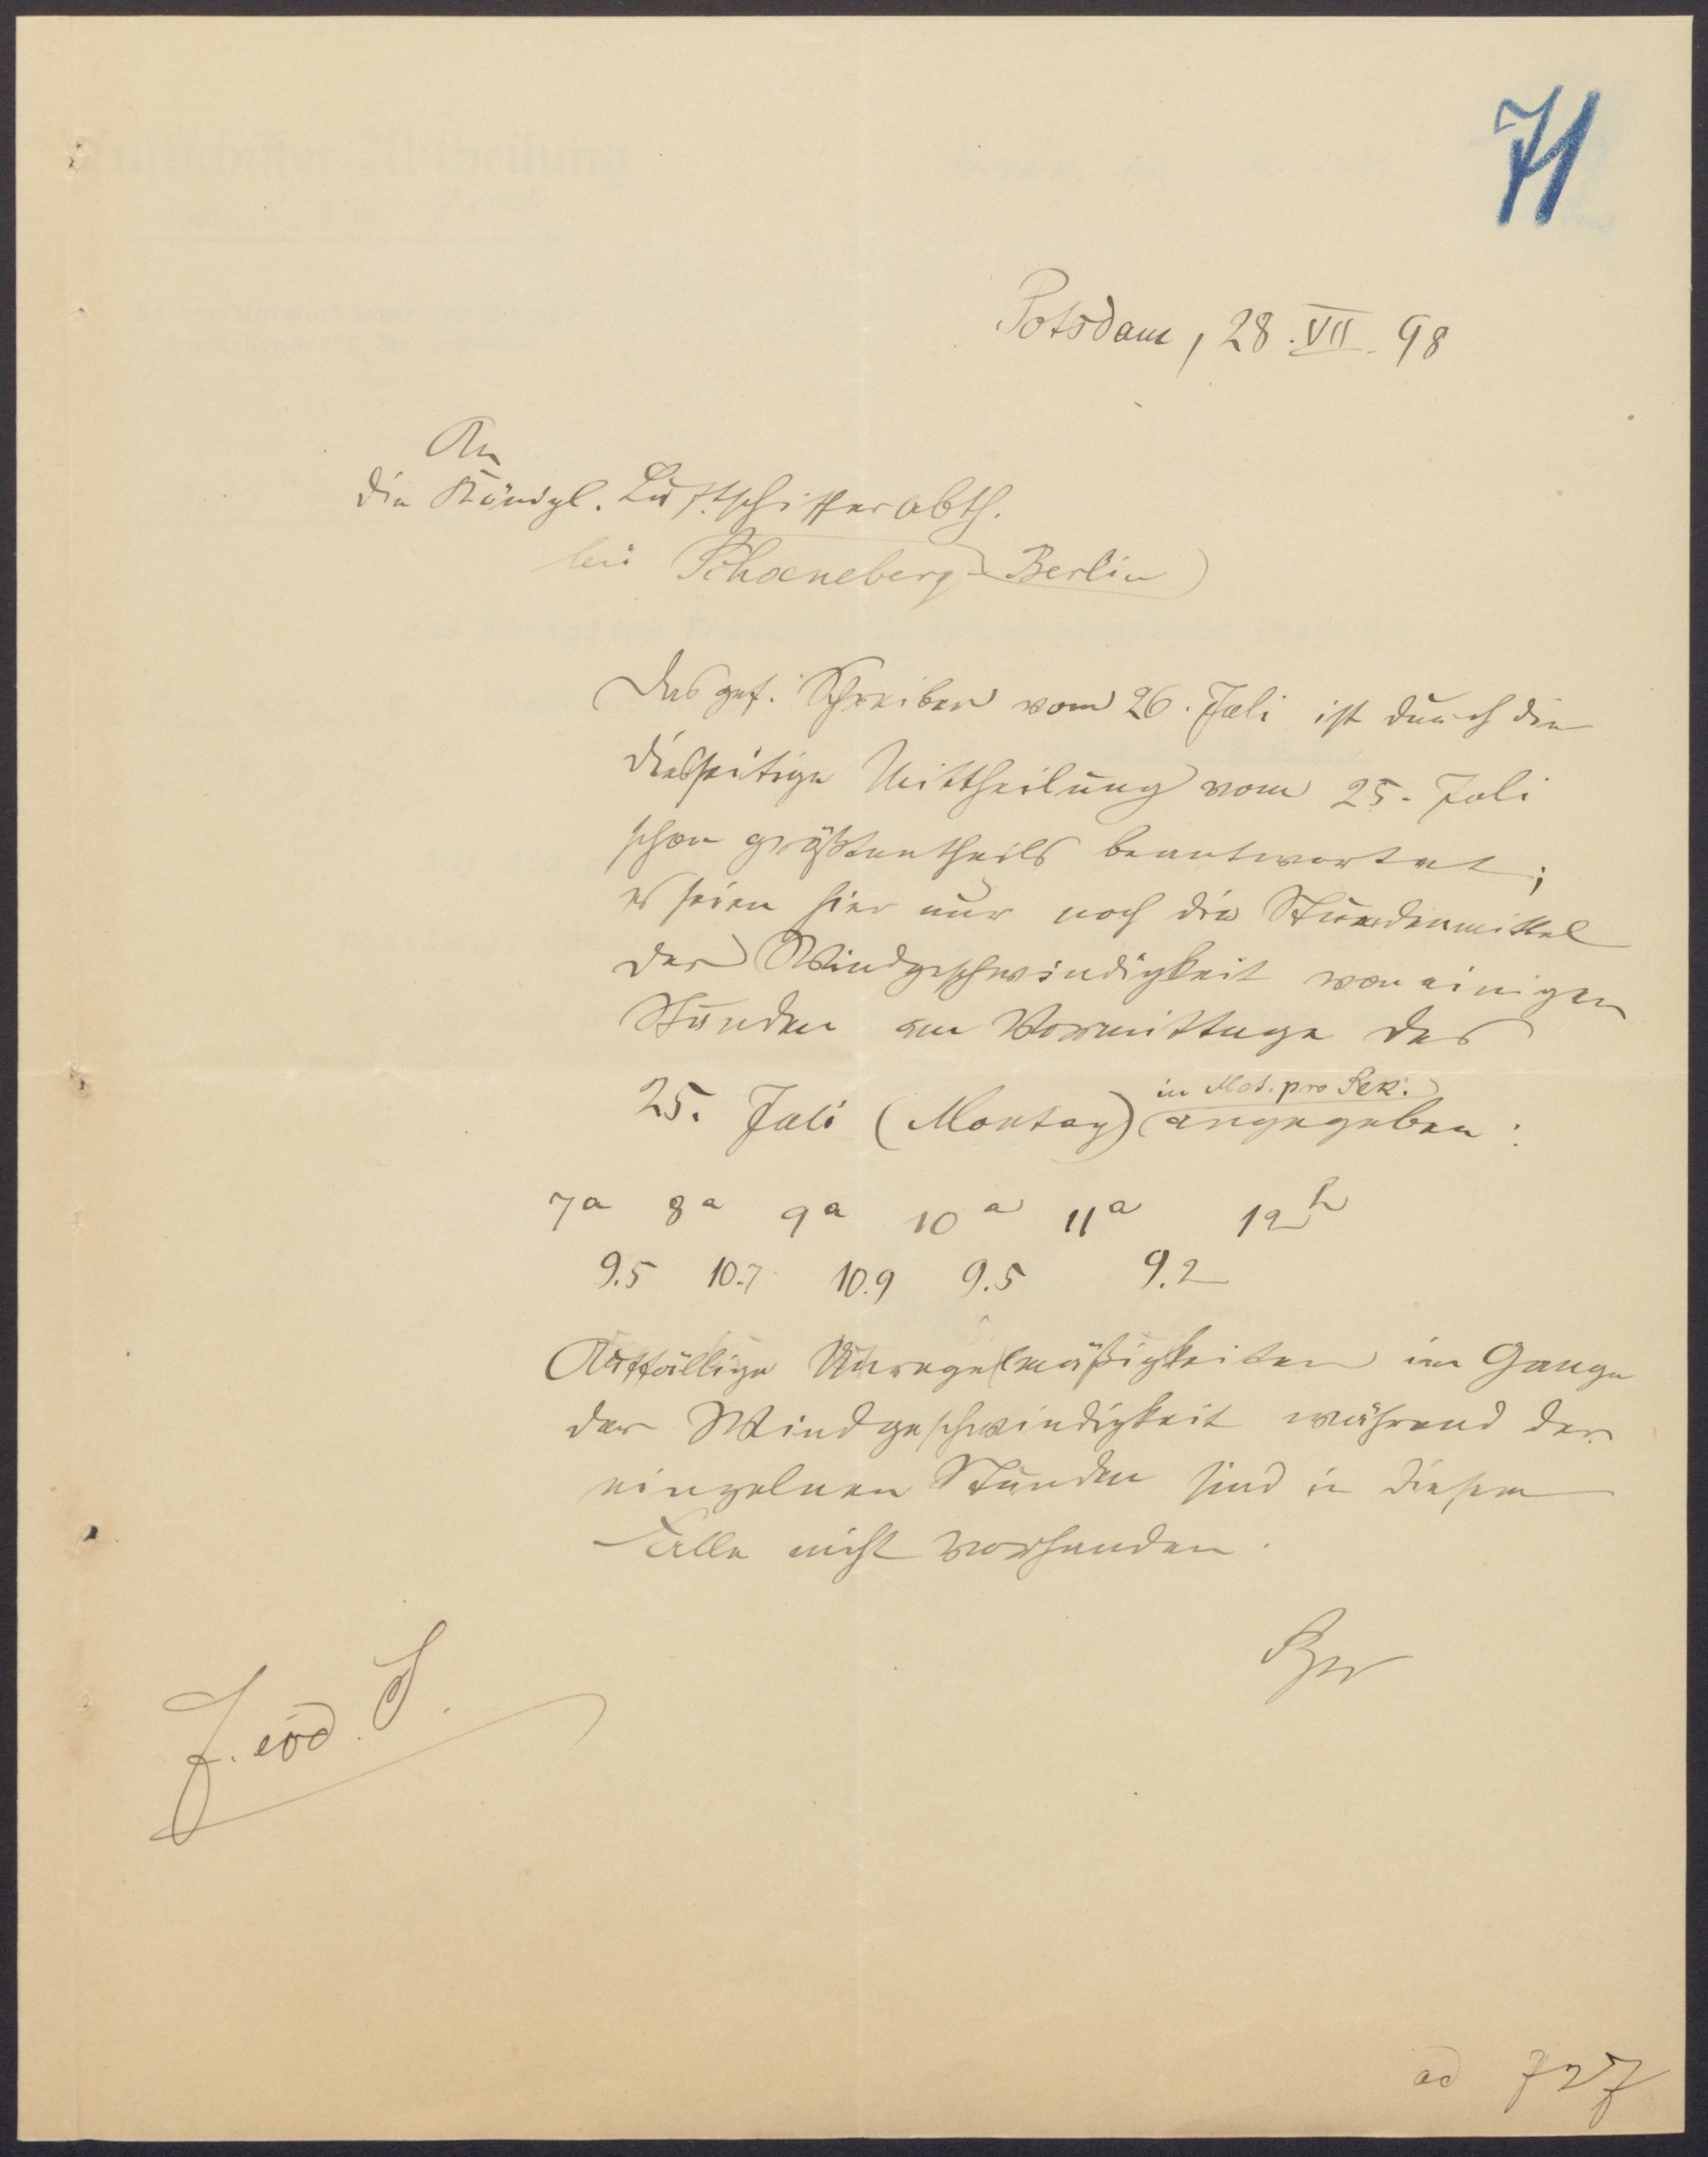 Antwort von Prof. Sprung auf Frage vom 25.7.1898 (Wettermuseum CC BY-NC-SA)